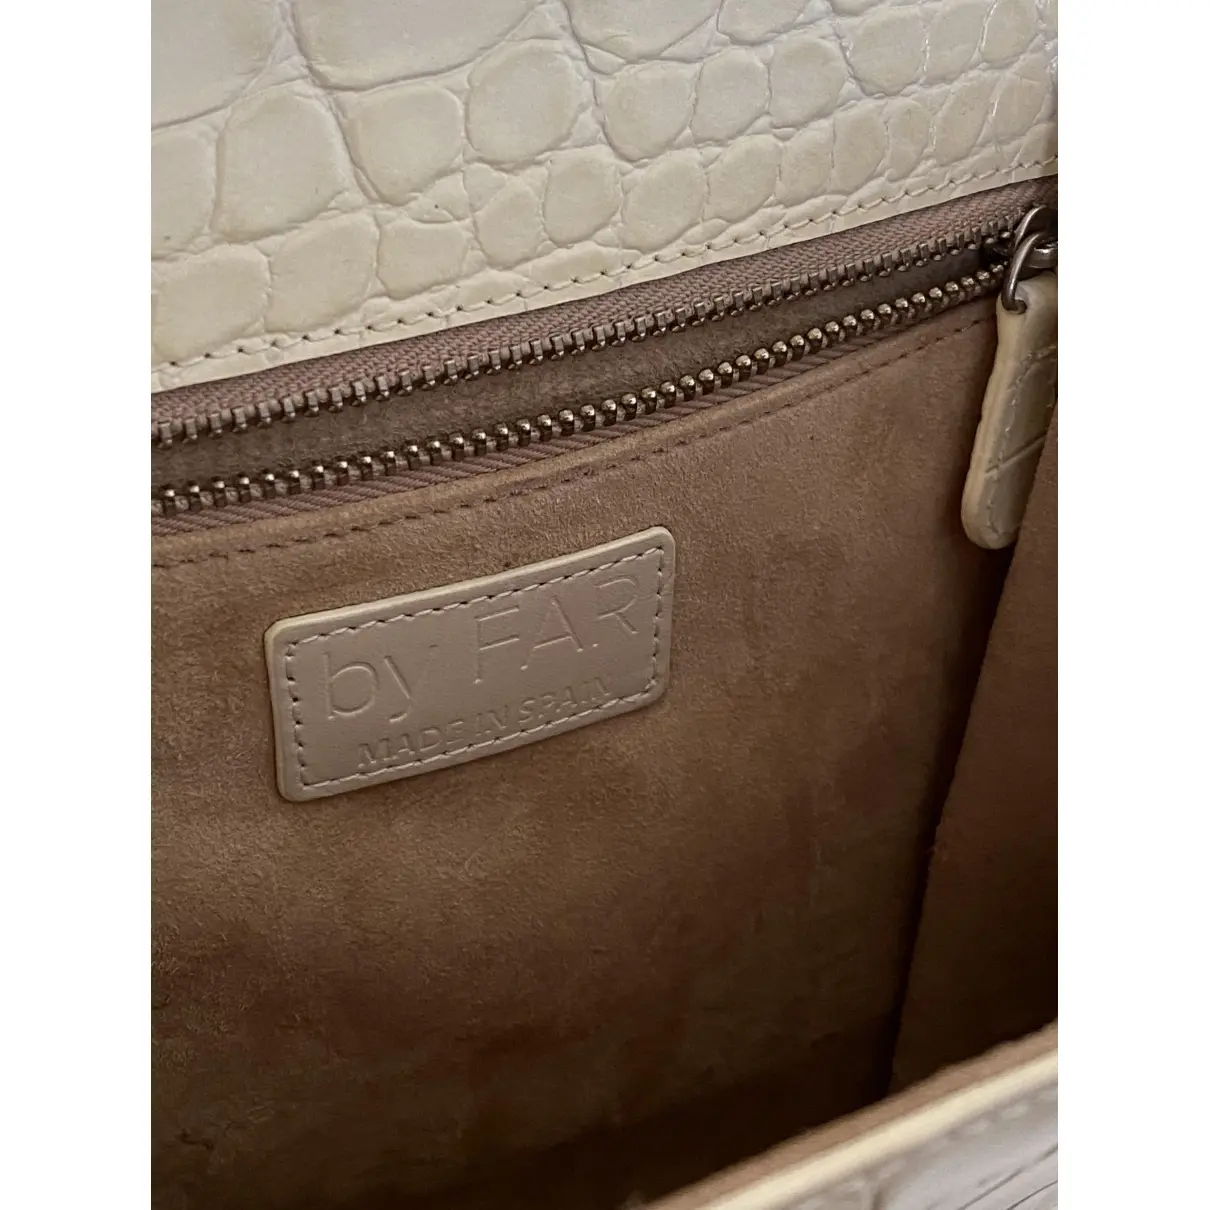 Leather handbag By Far